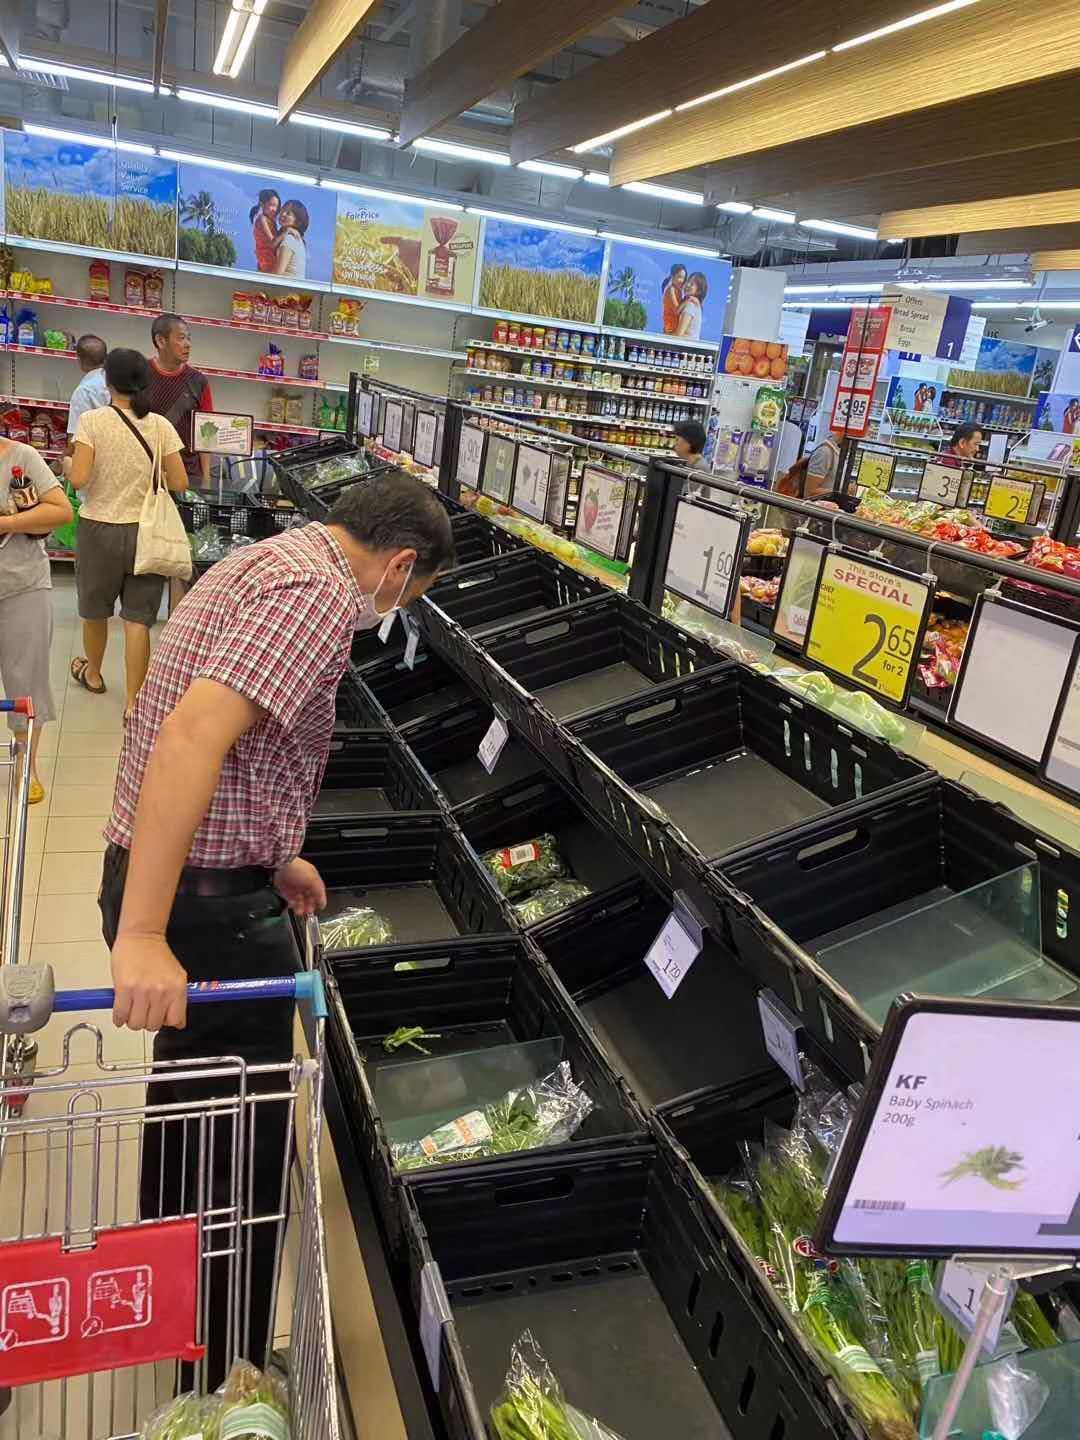 马来西亚雪兰莪 : 2021年11月15日超市内景位于马来西亚沙阿拉姆 编辑类库存图片 - 图片 包括有 负荷, 冲减: 234948809